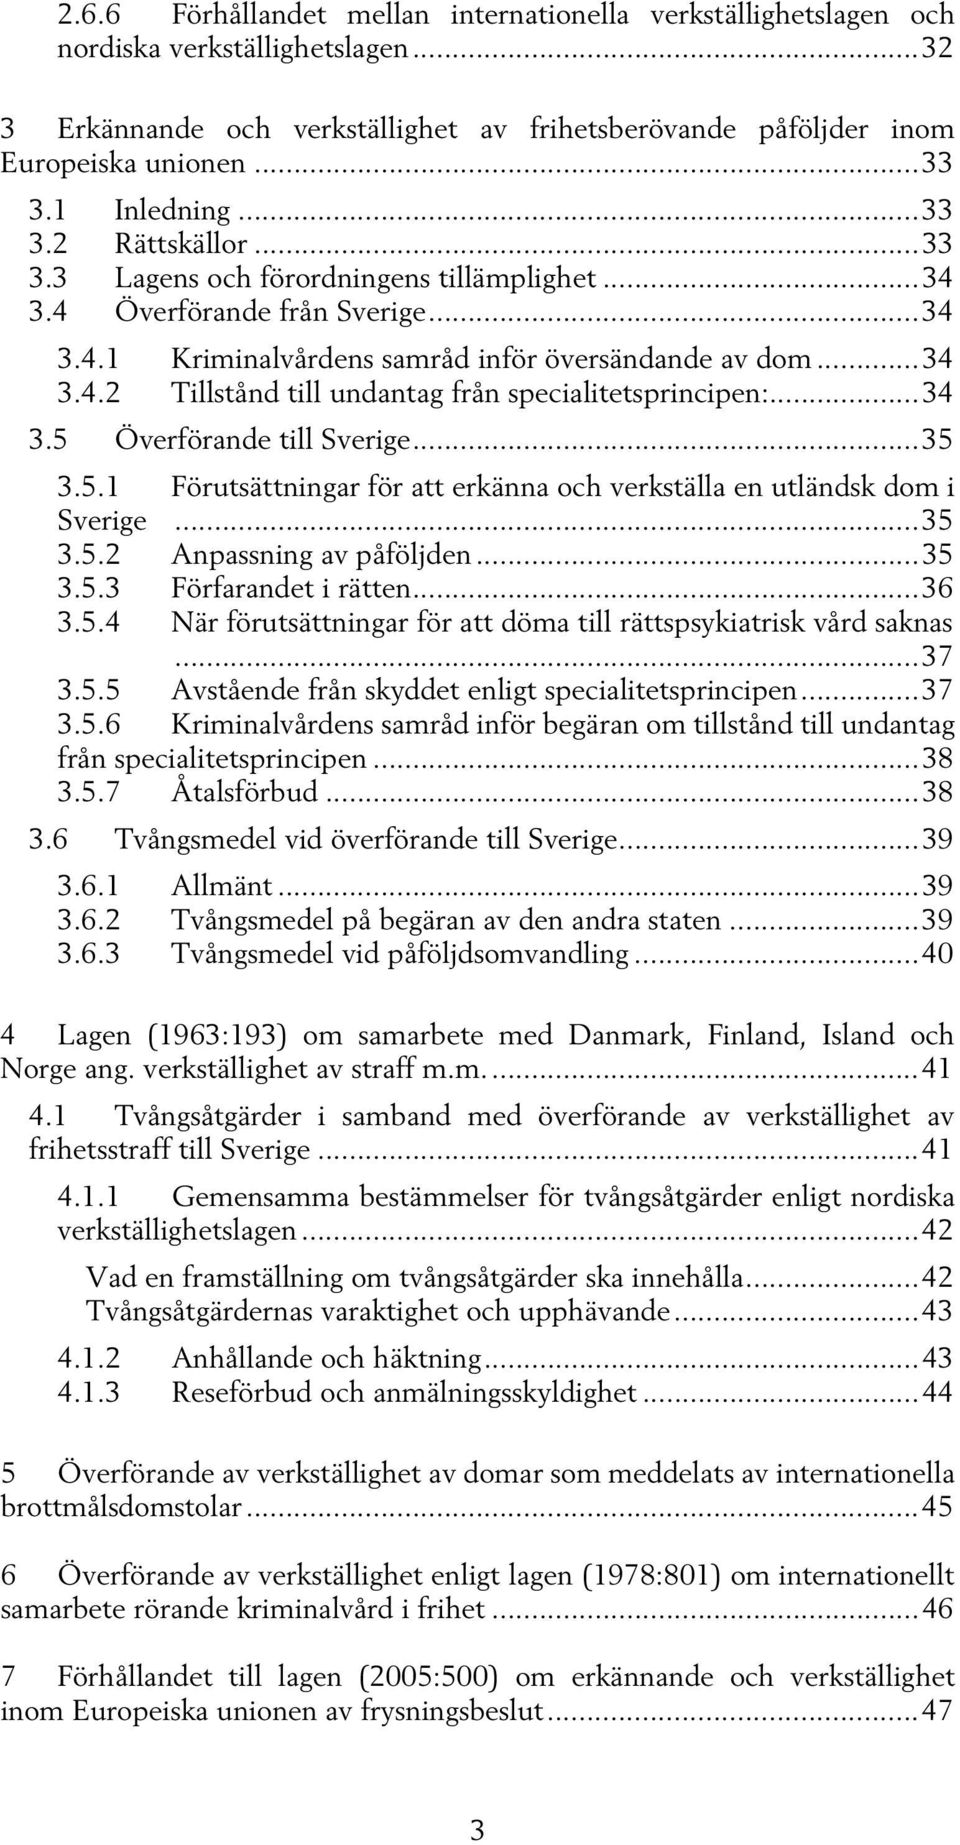 .. 34 3.5 Överförande till Sverige... 35 3.5.1 Förutsättningar för att erkänna och verkställa en utländsk dom i Sverige... 35 3.5.2 Anpassning av påföljden... 35 3.5.3 Förfarandet i rätten... 36 3.5.4 När förutsättningar för att döma till rättspsykiatrisk vård saknas.